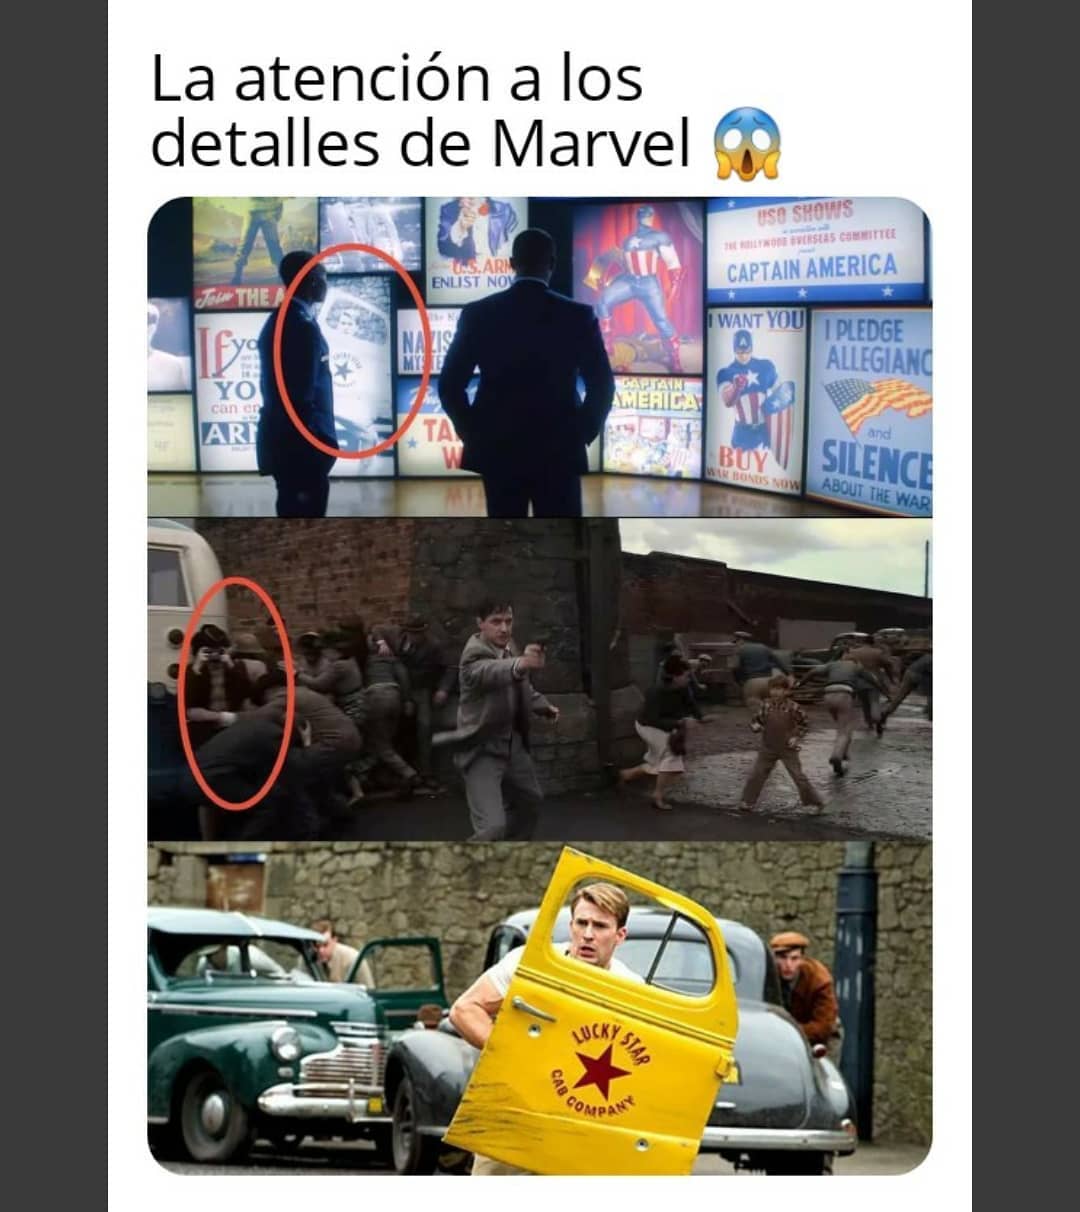 La atención a los detalles de Marvel.